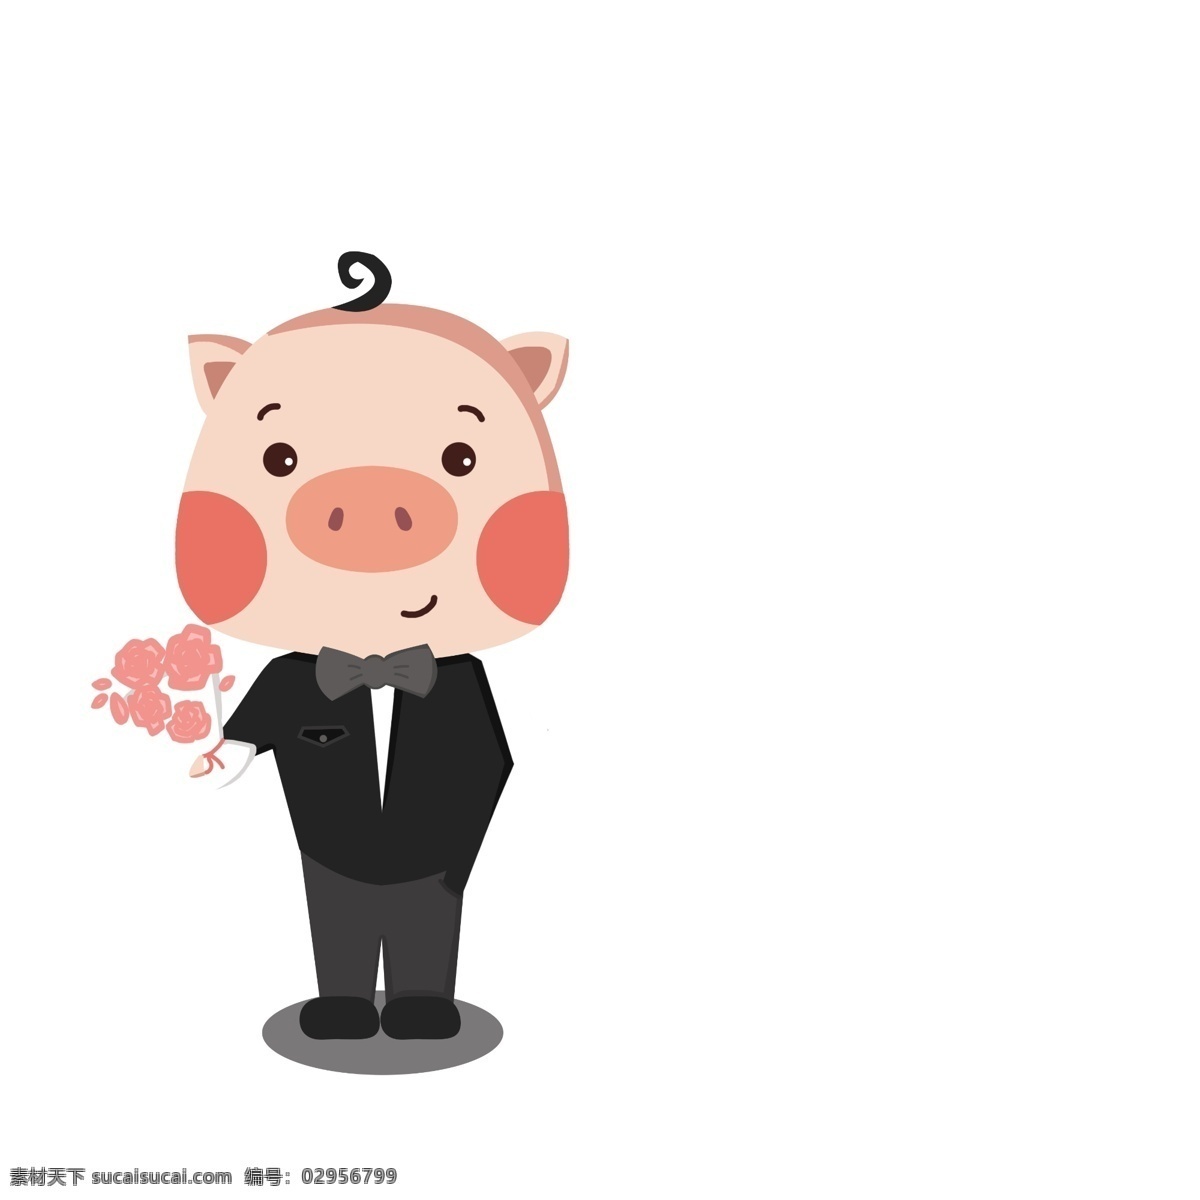 卡通 手绘 猪年 可爱 帅气 穿 西装 穿西装小猪 可爱小猪 捧花 手绘卡通小猪 猪年小猪 花纹 背景 免 抠 图